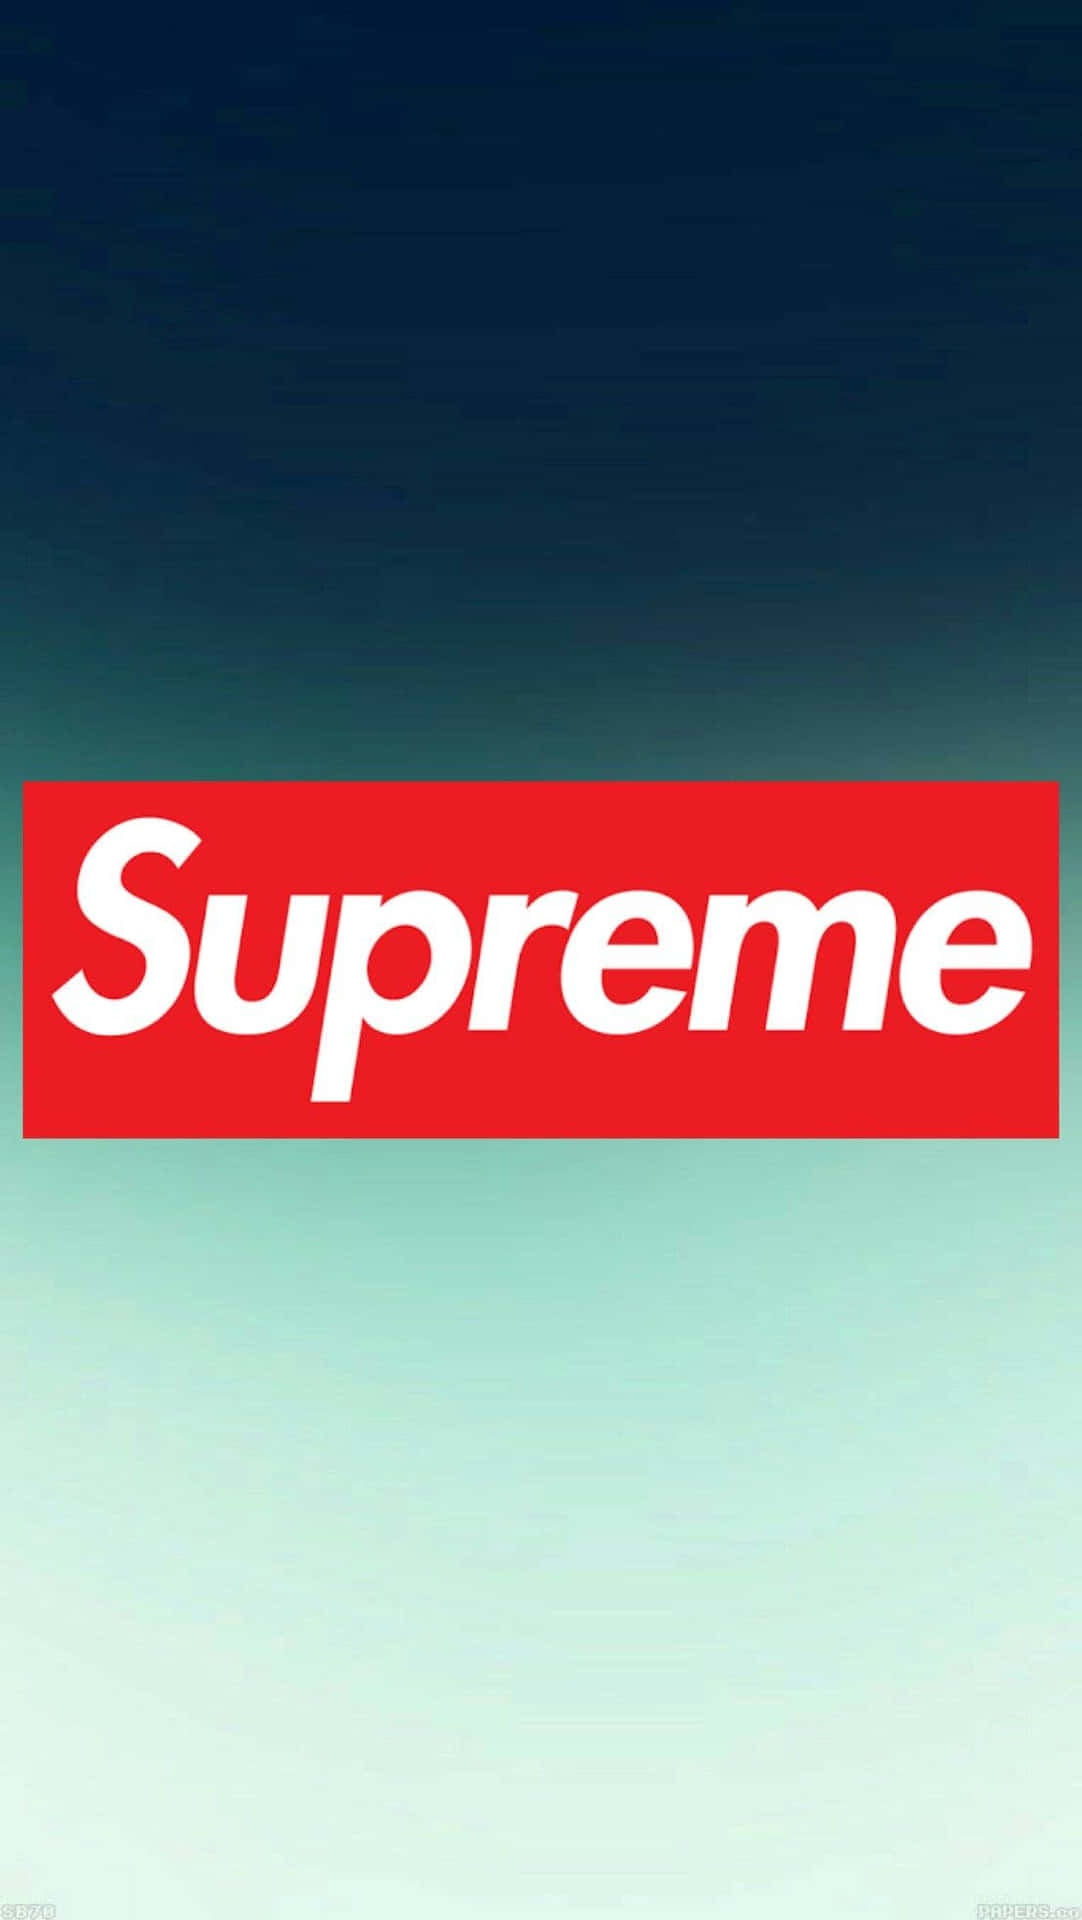 Supreme-logo Wallpaper